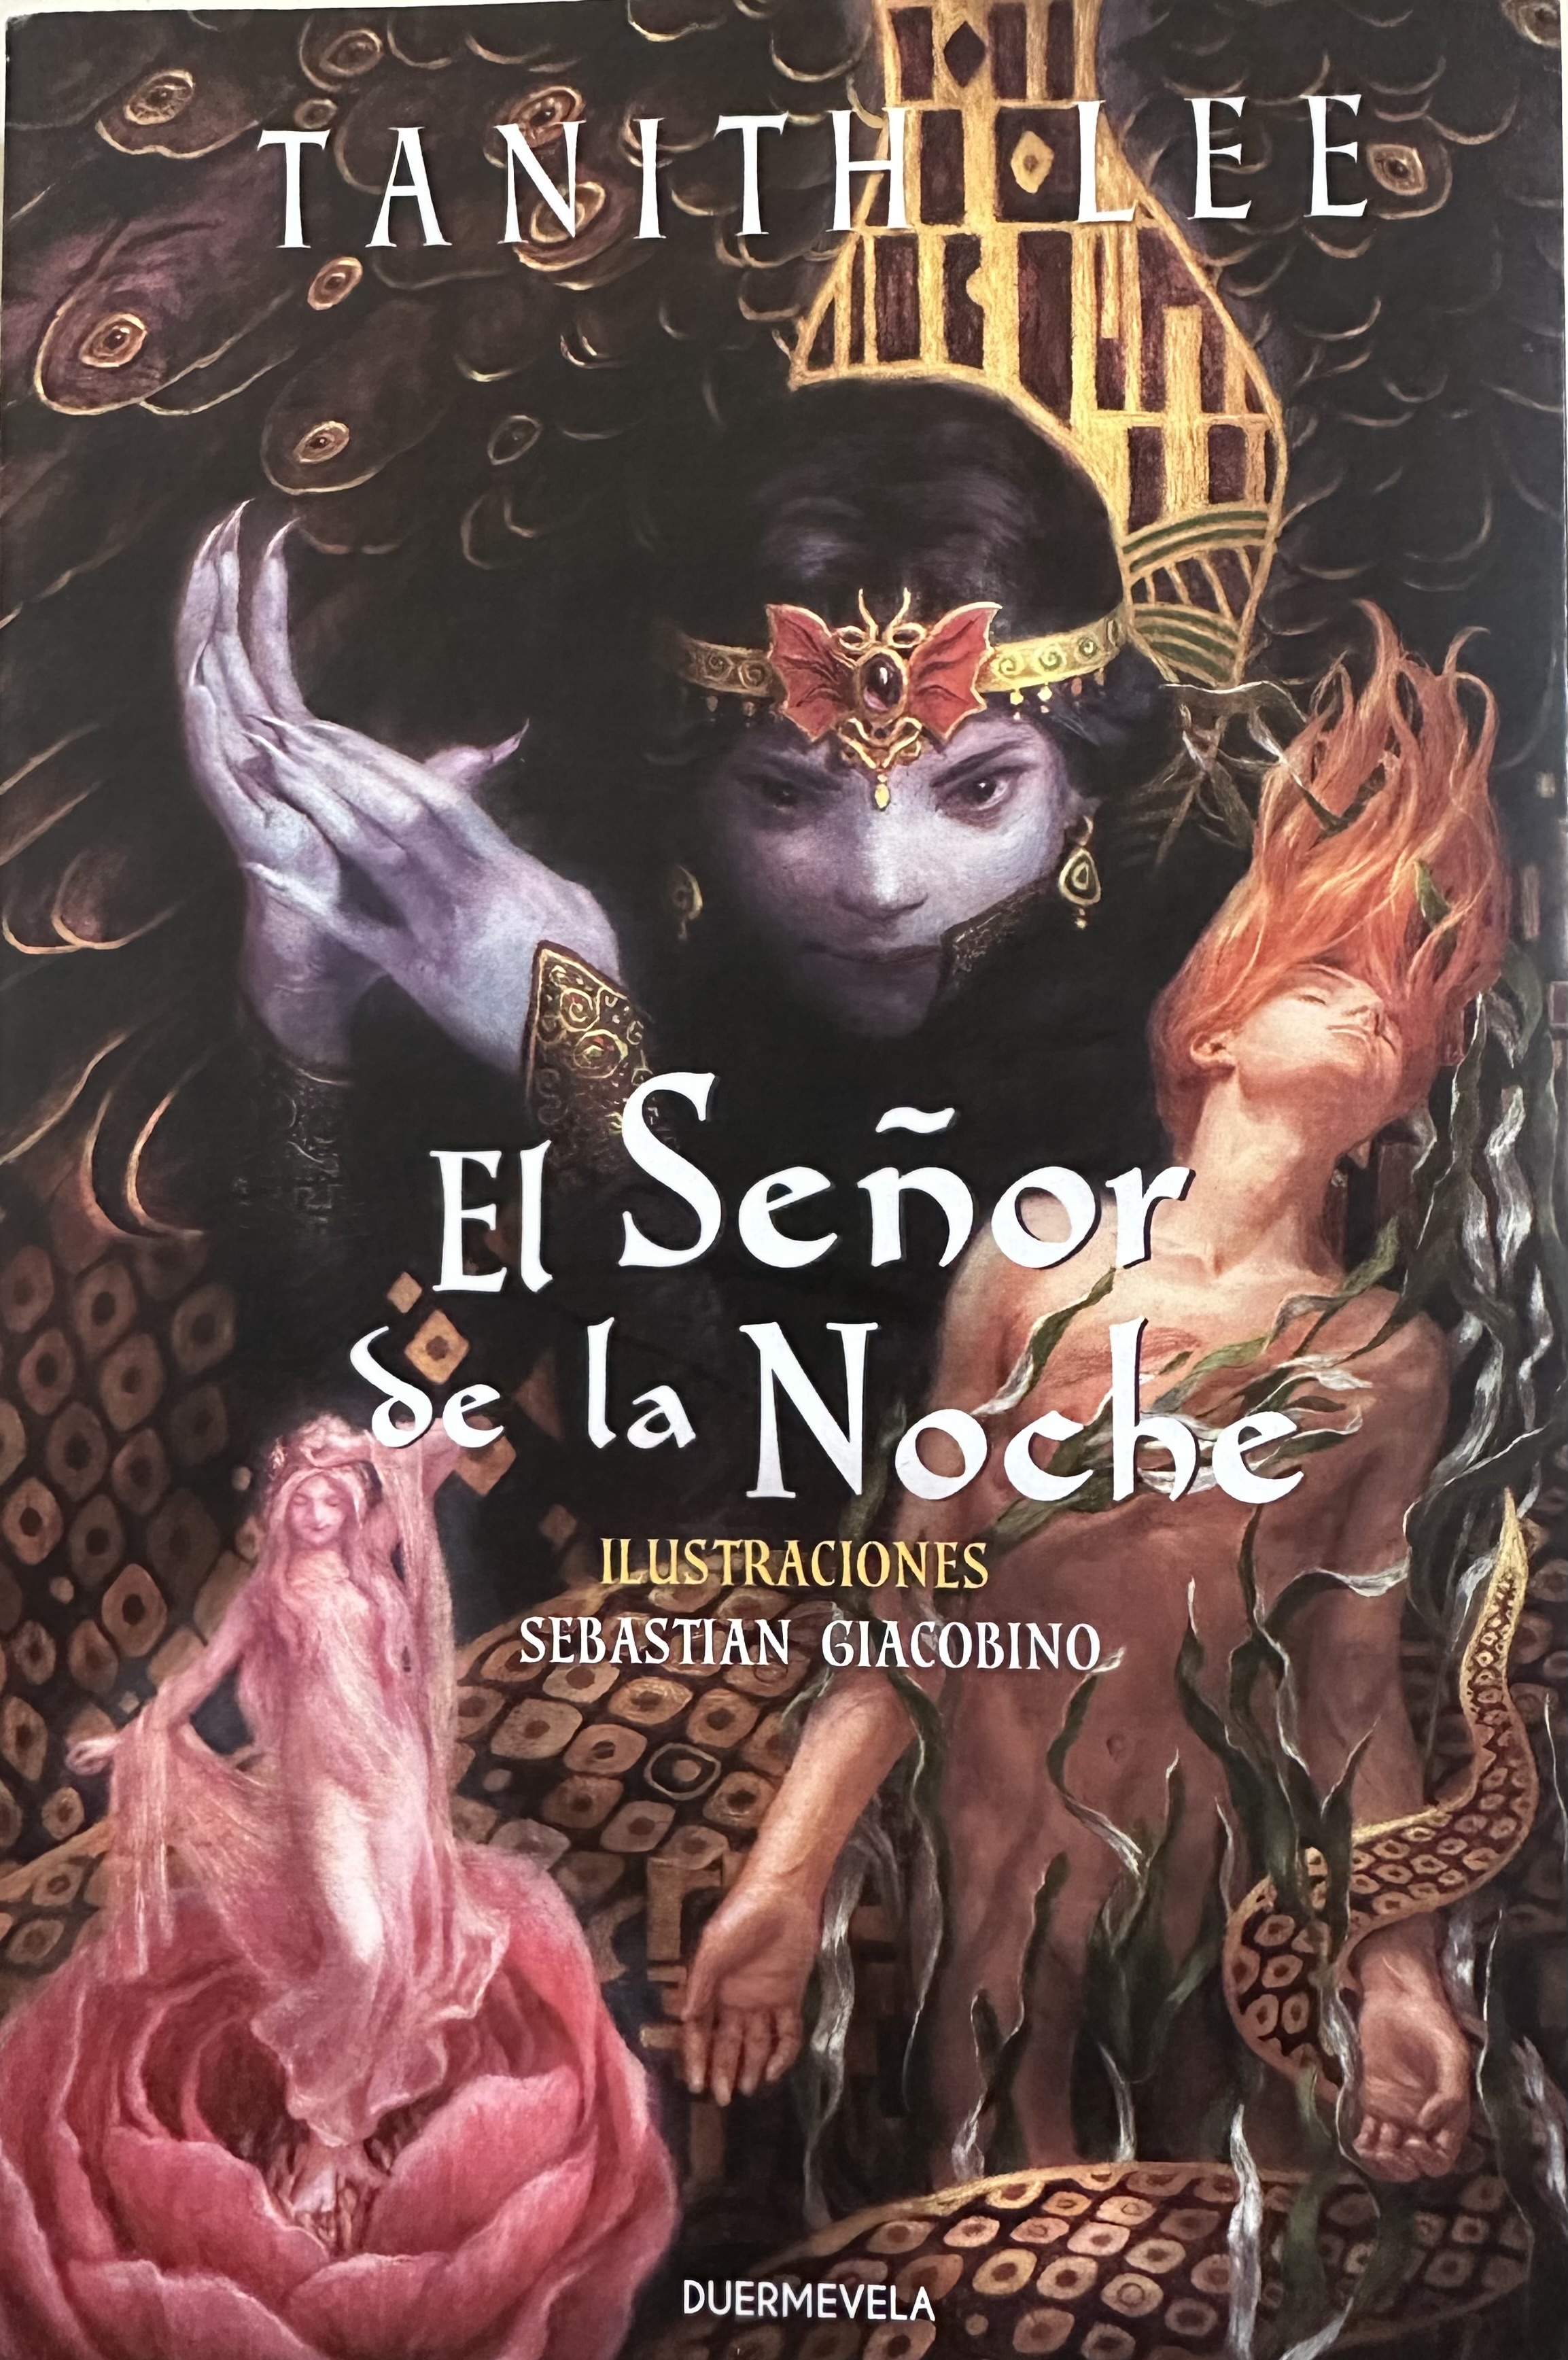 El Seor De La Noche (Night's Master)